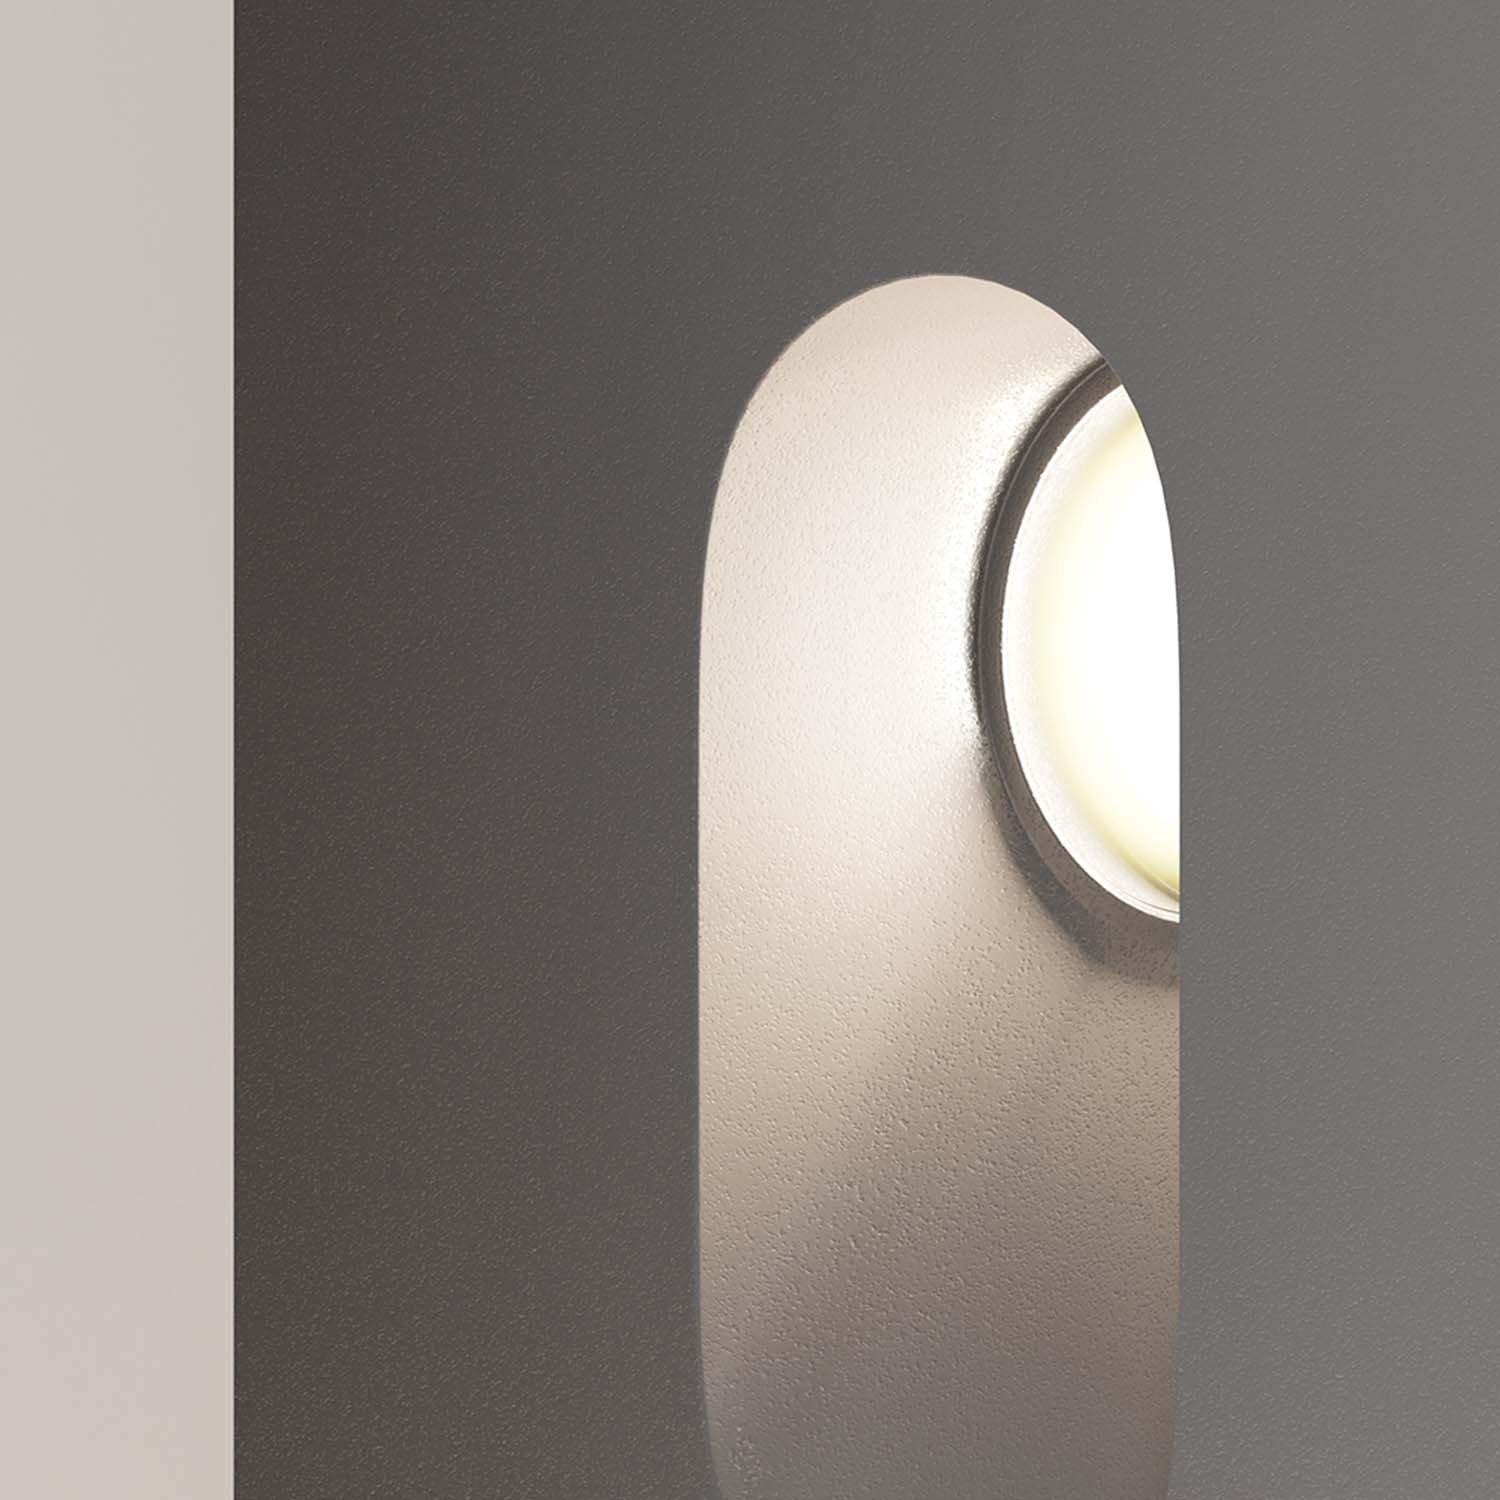 VIA URBANA - Design staircase spotlight, indoor and outdoor waterproof